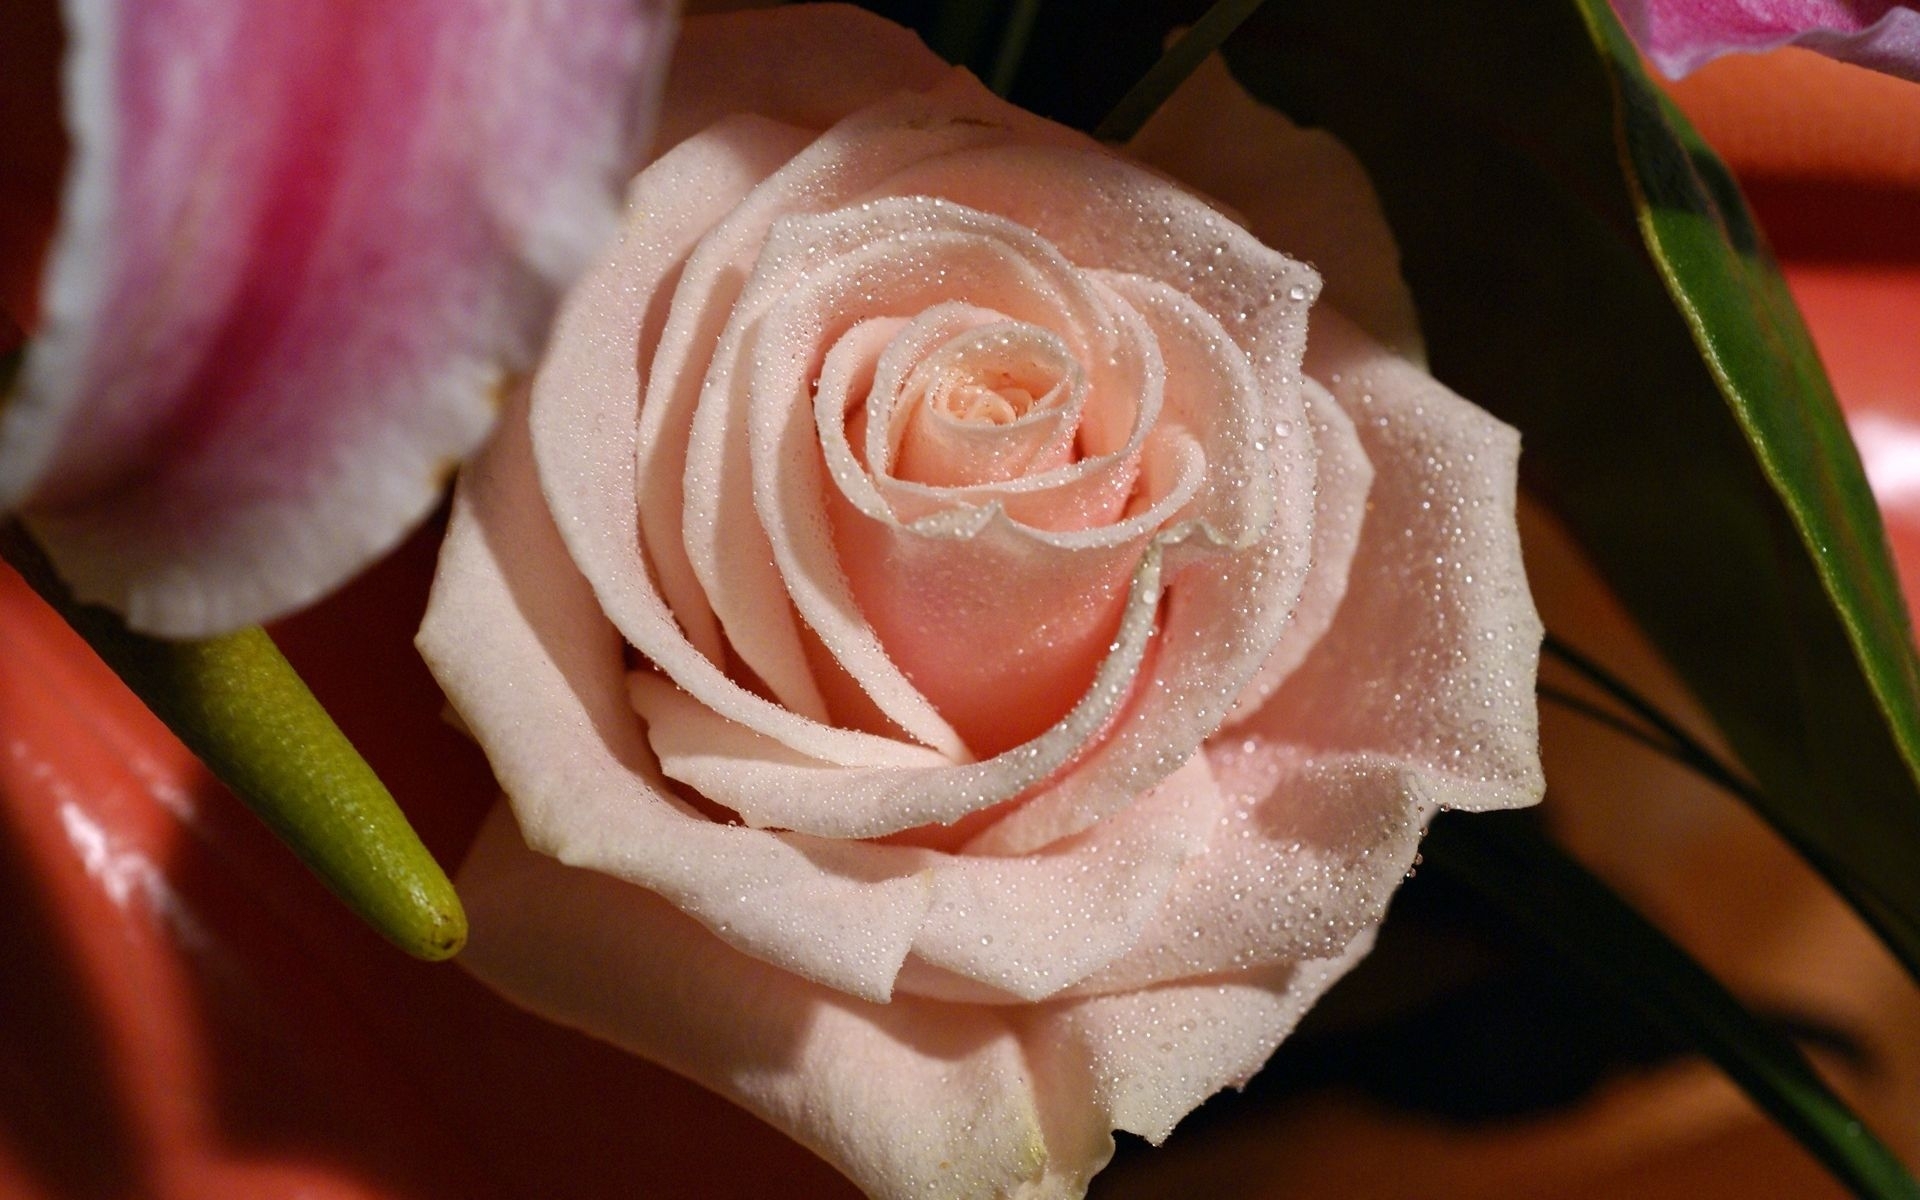 Скачать обои бесплатно Цветы, Розы, Растения картинка на рабочий стол ПК